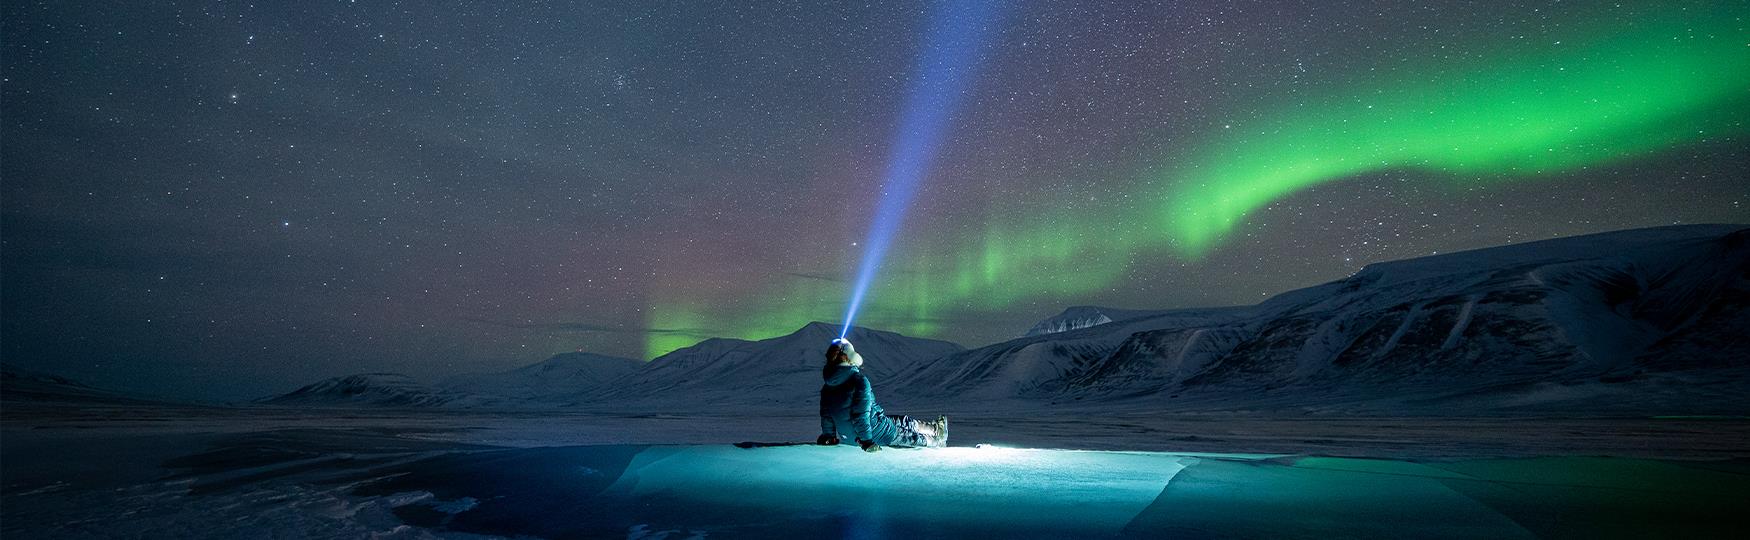 En person som sitter på en isformasjon med en hodelykt på hodet og ser opp mot en stjerneklar himmel med nordlys i bakgrunnen